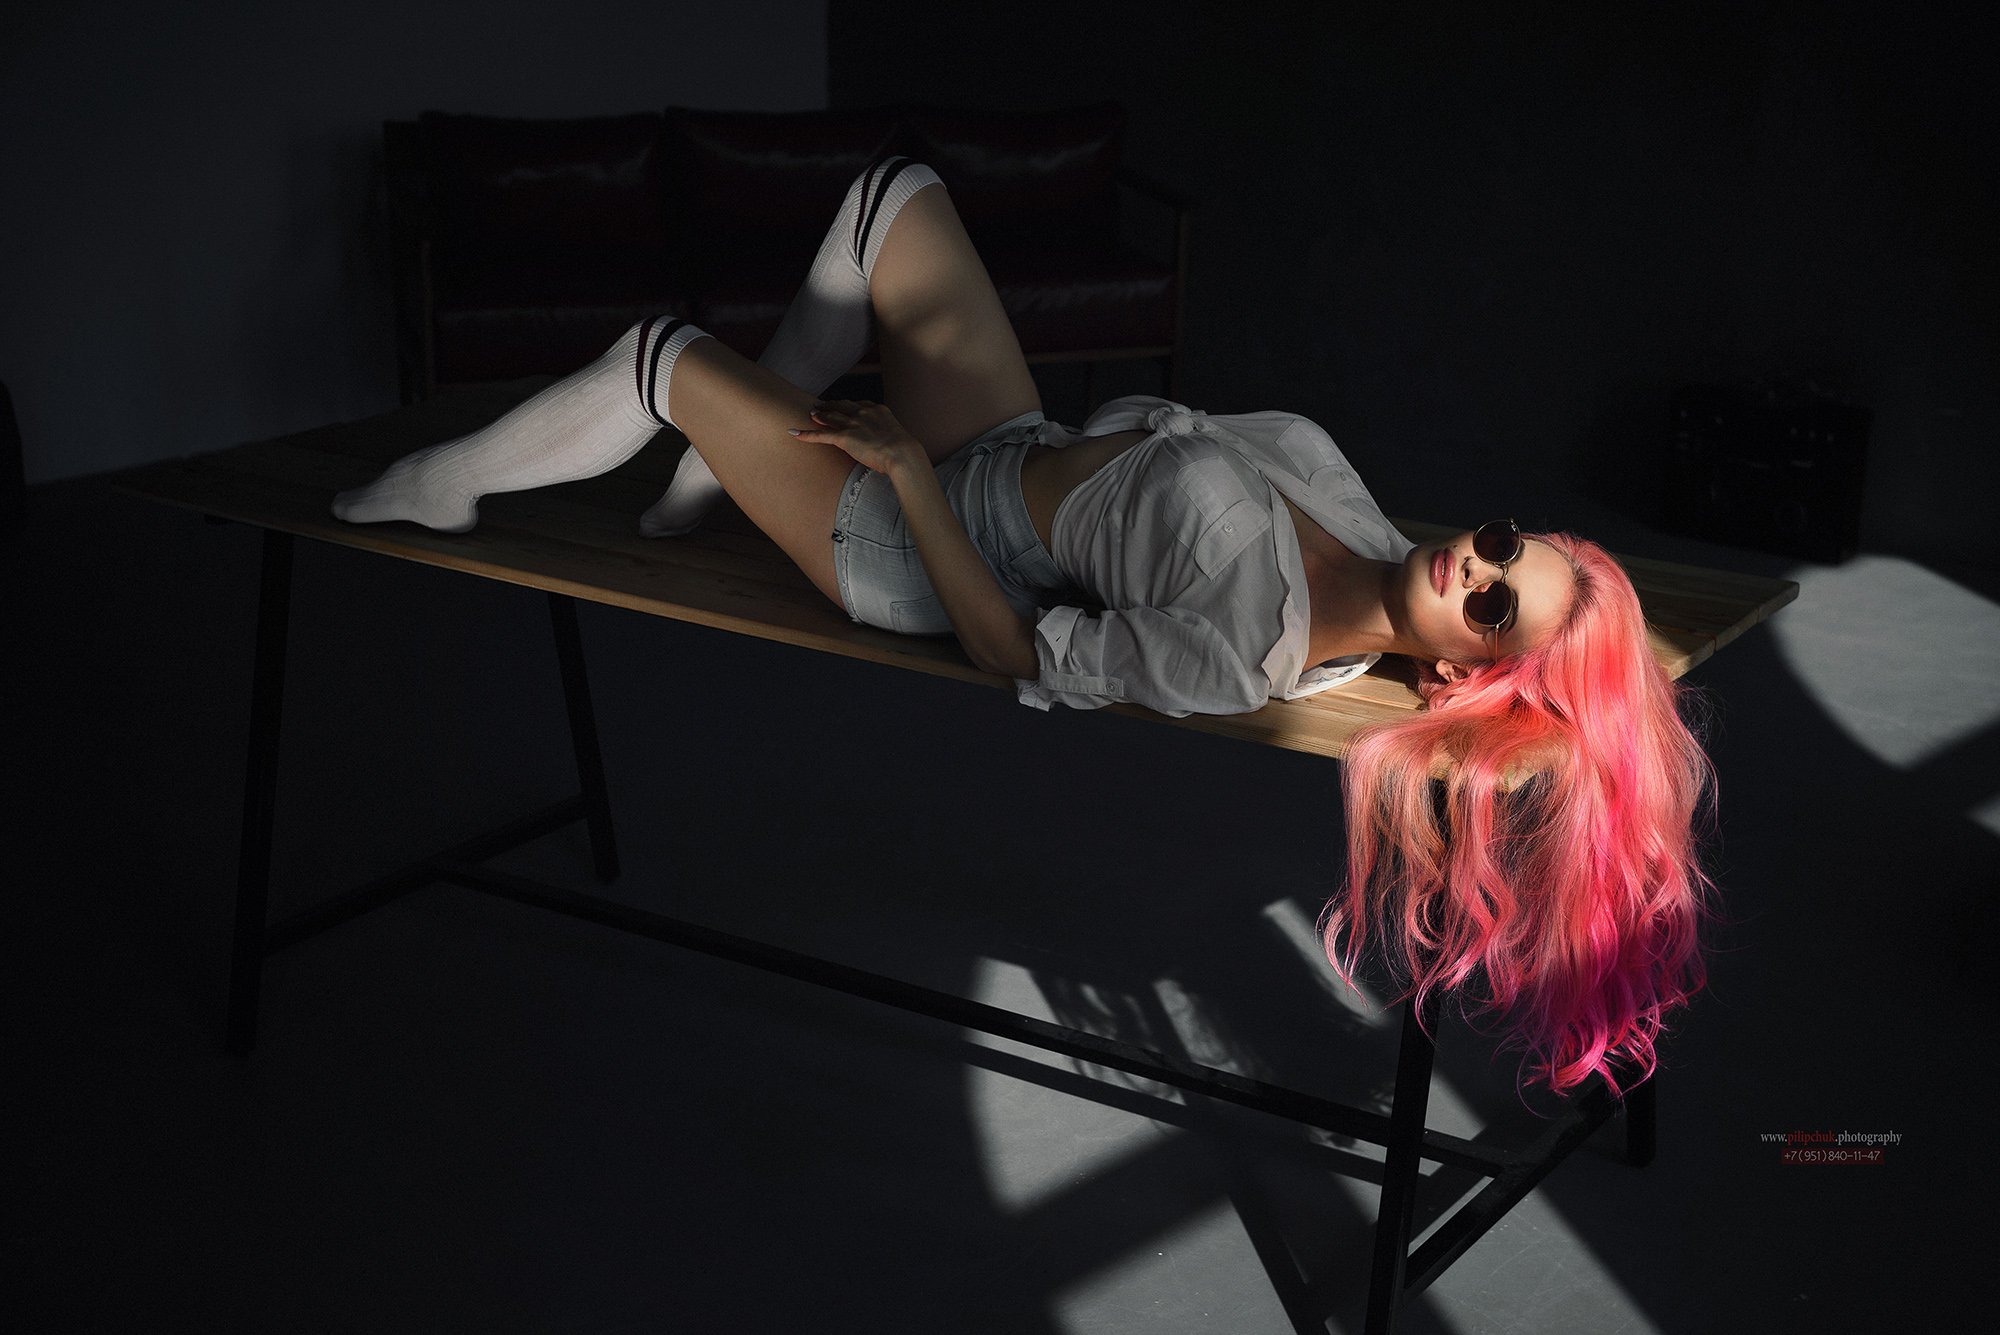 розовые волосы, портрет, девушка на столе, фото в студии, лучший портрет девушки ), Пилипчук Константин